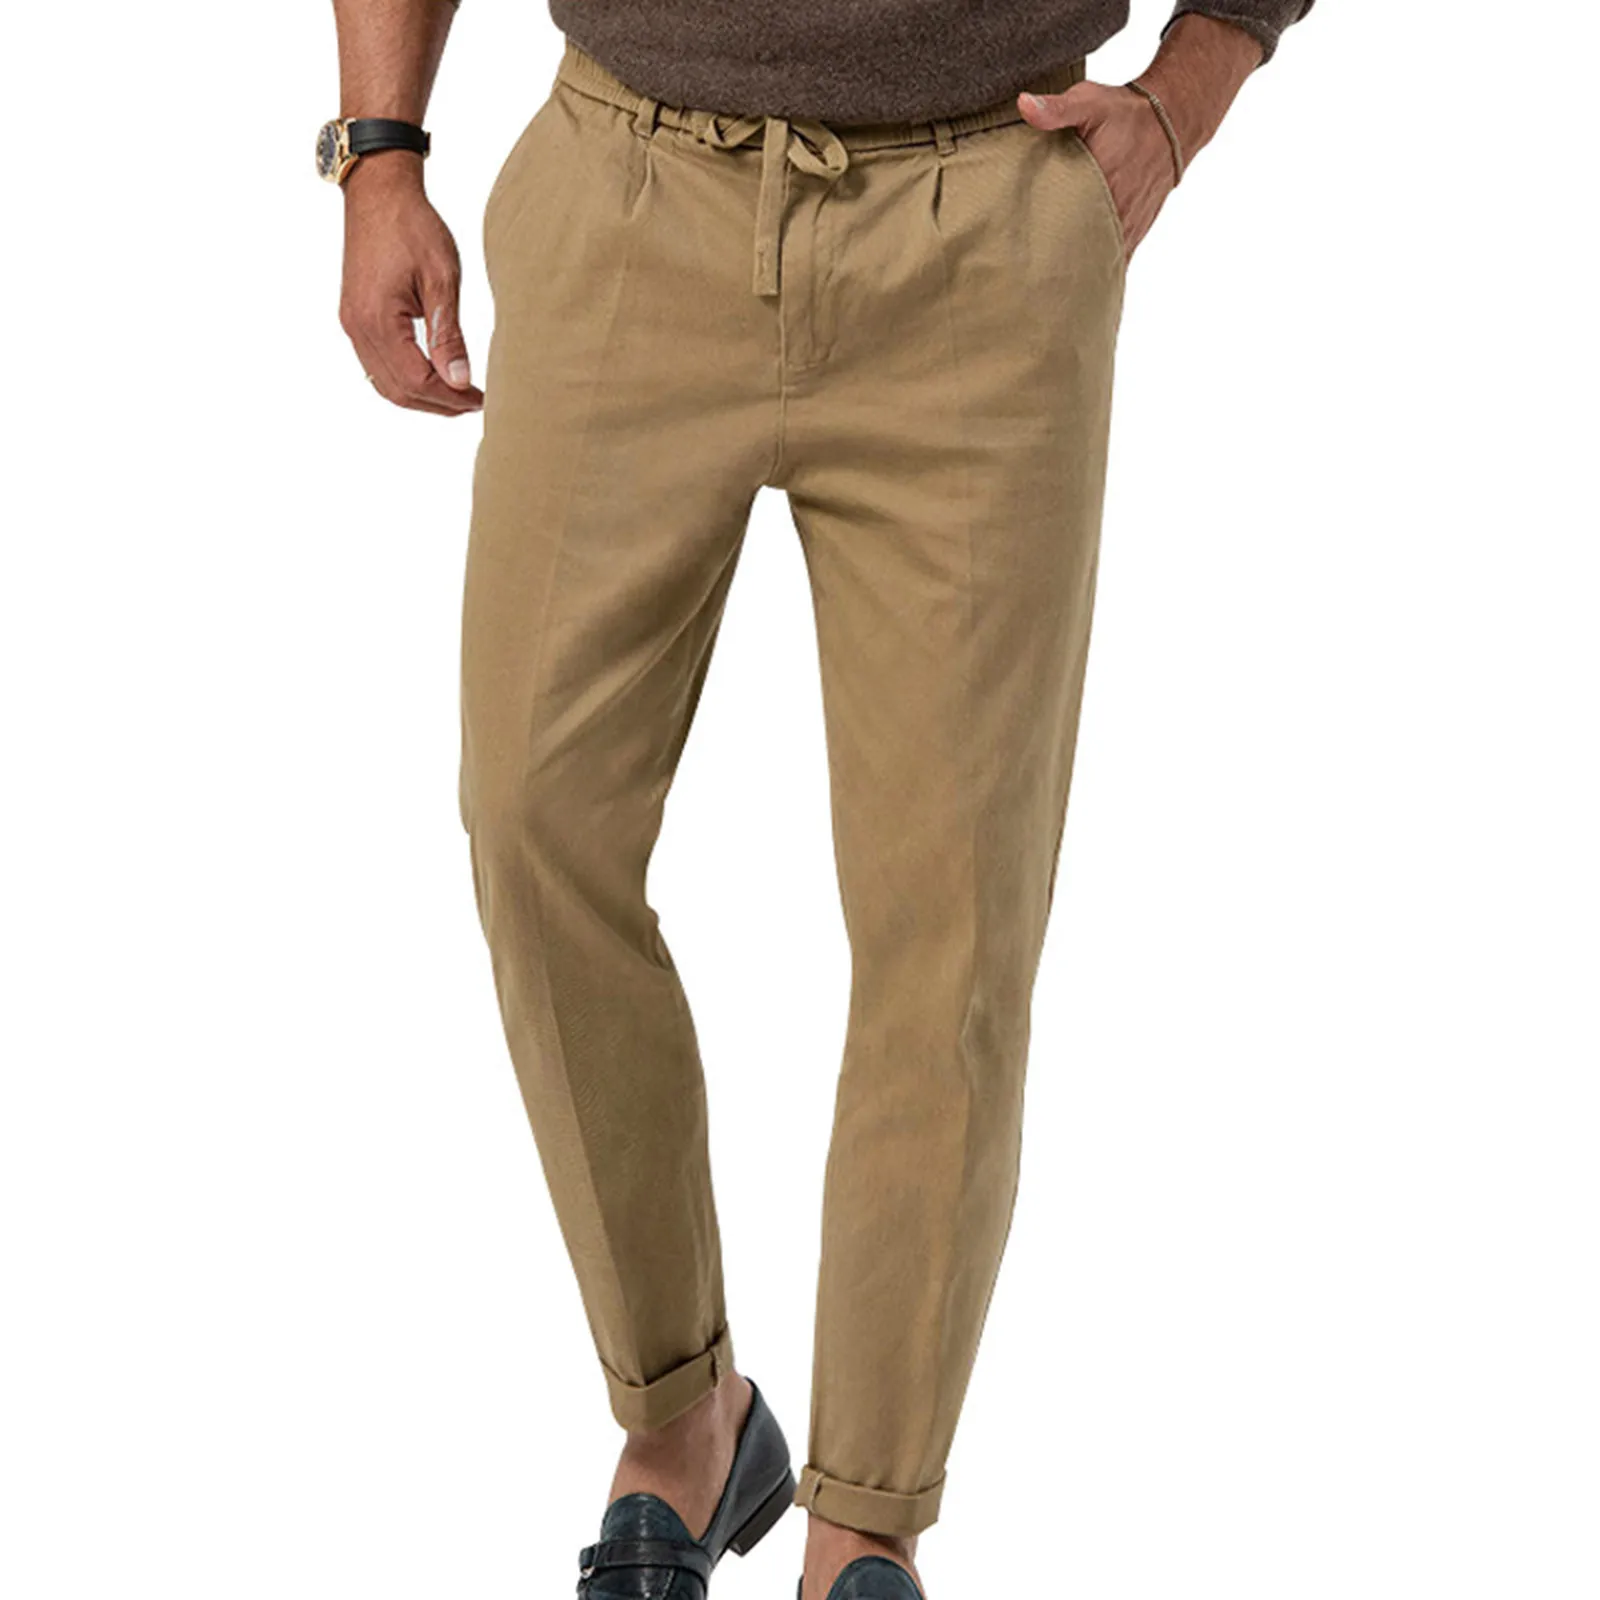 Men's Cotton Linen Pants Solid Casual Loose Men Clothing Elastic Waist Breathable Fitness Pants Pantalon Homme Pencil Pants 4